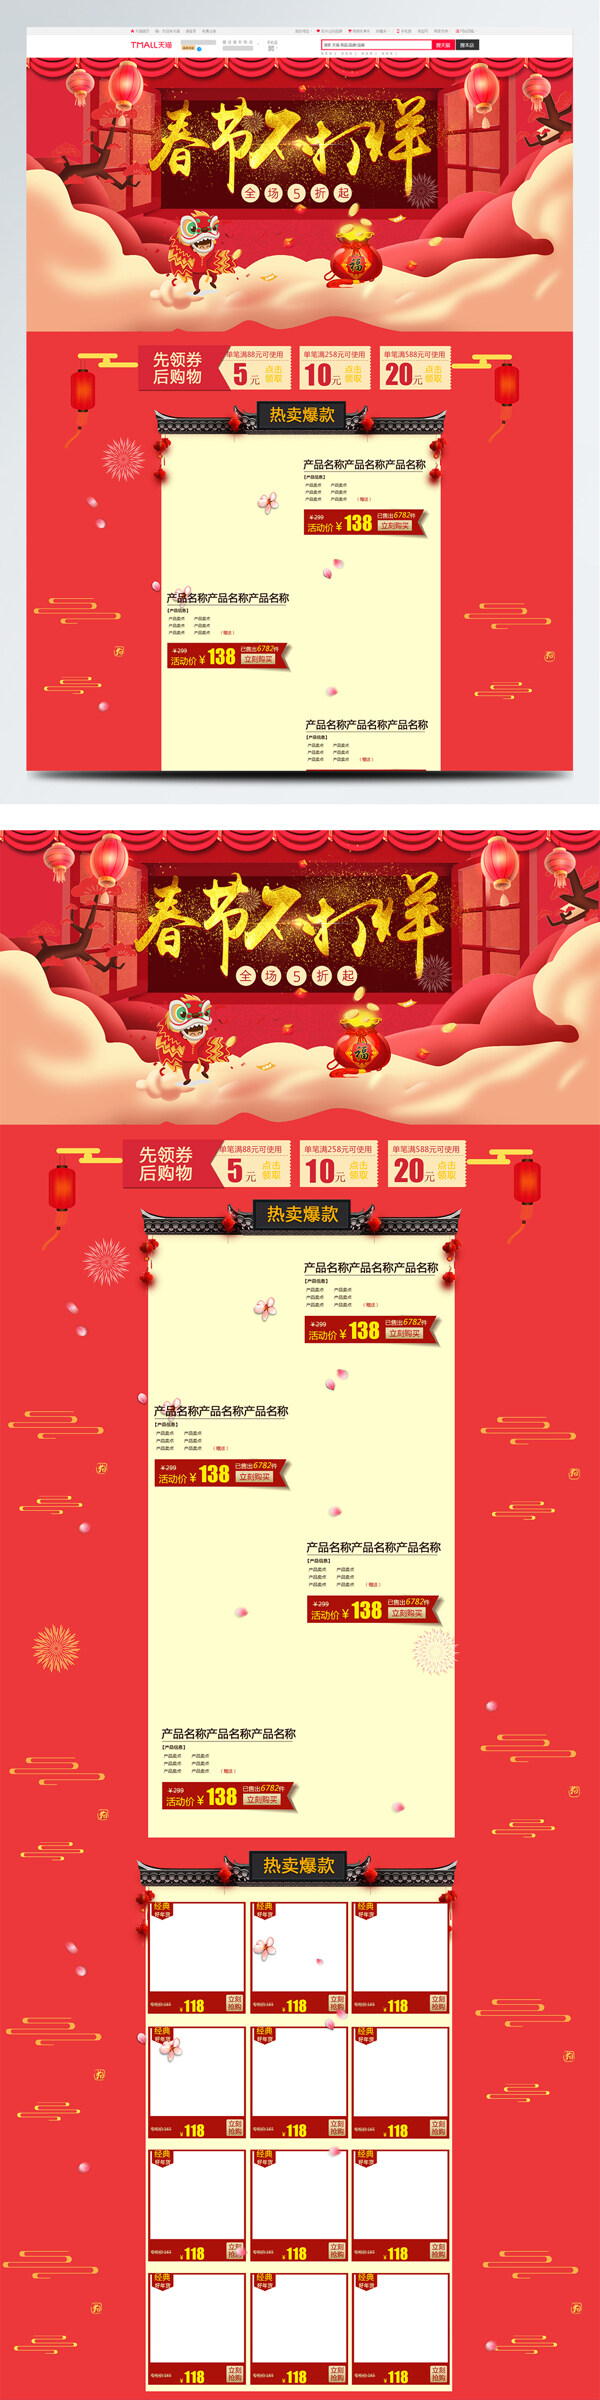 中国风电商促销春节不打烊休闲食品首页模版